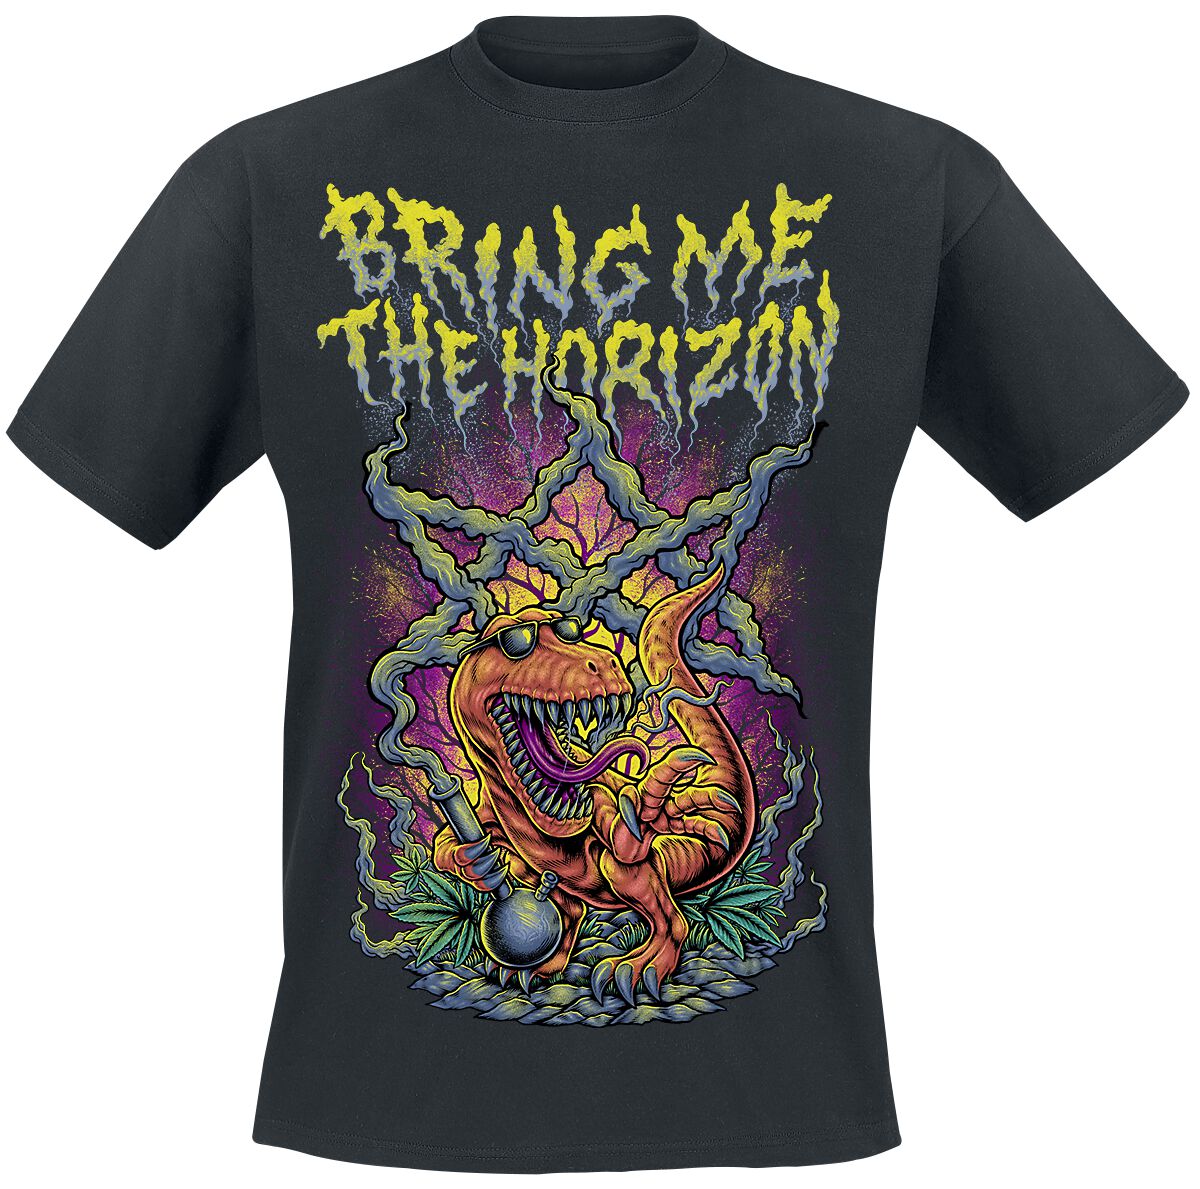 Bring Me The Horizon Smoking Dinosaur T-Shirt schwarz in M